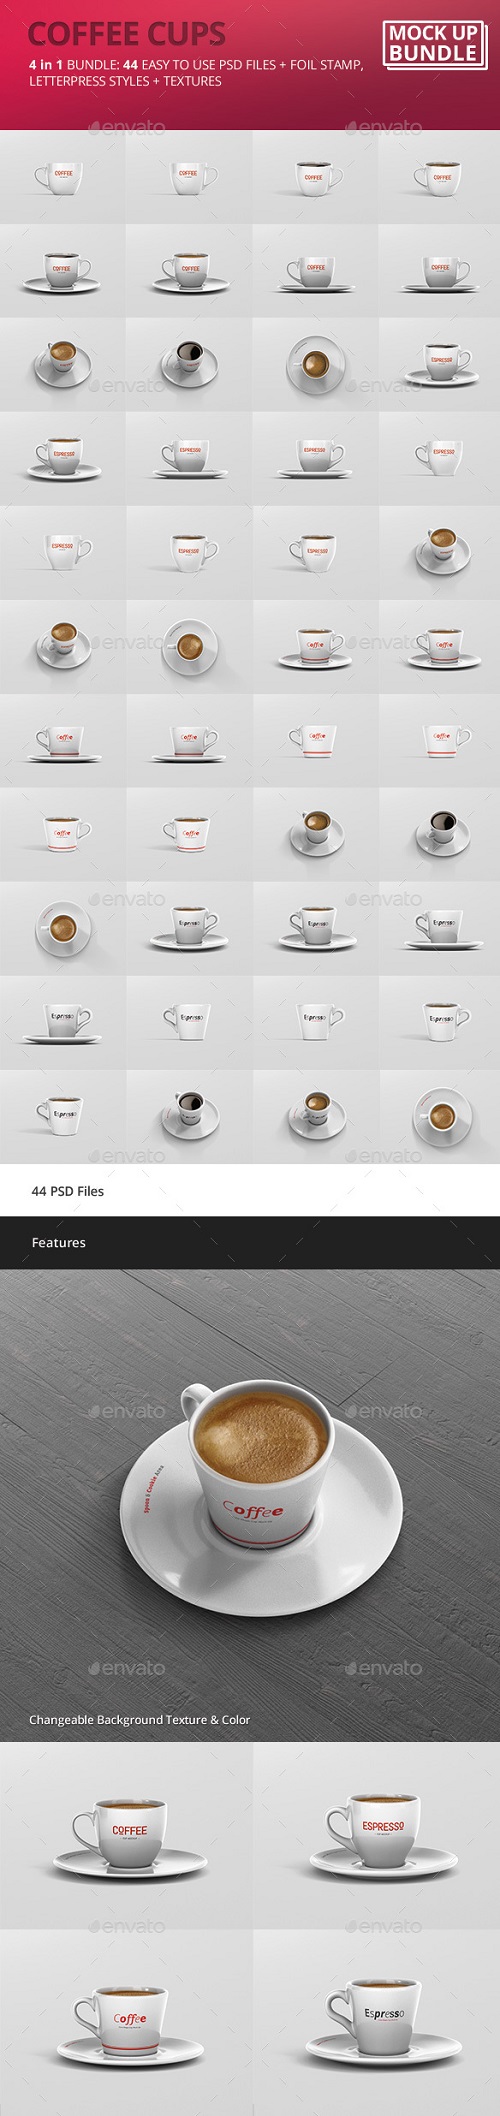 Espresso - Coffee Cup Mockup Bundle - 20062463